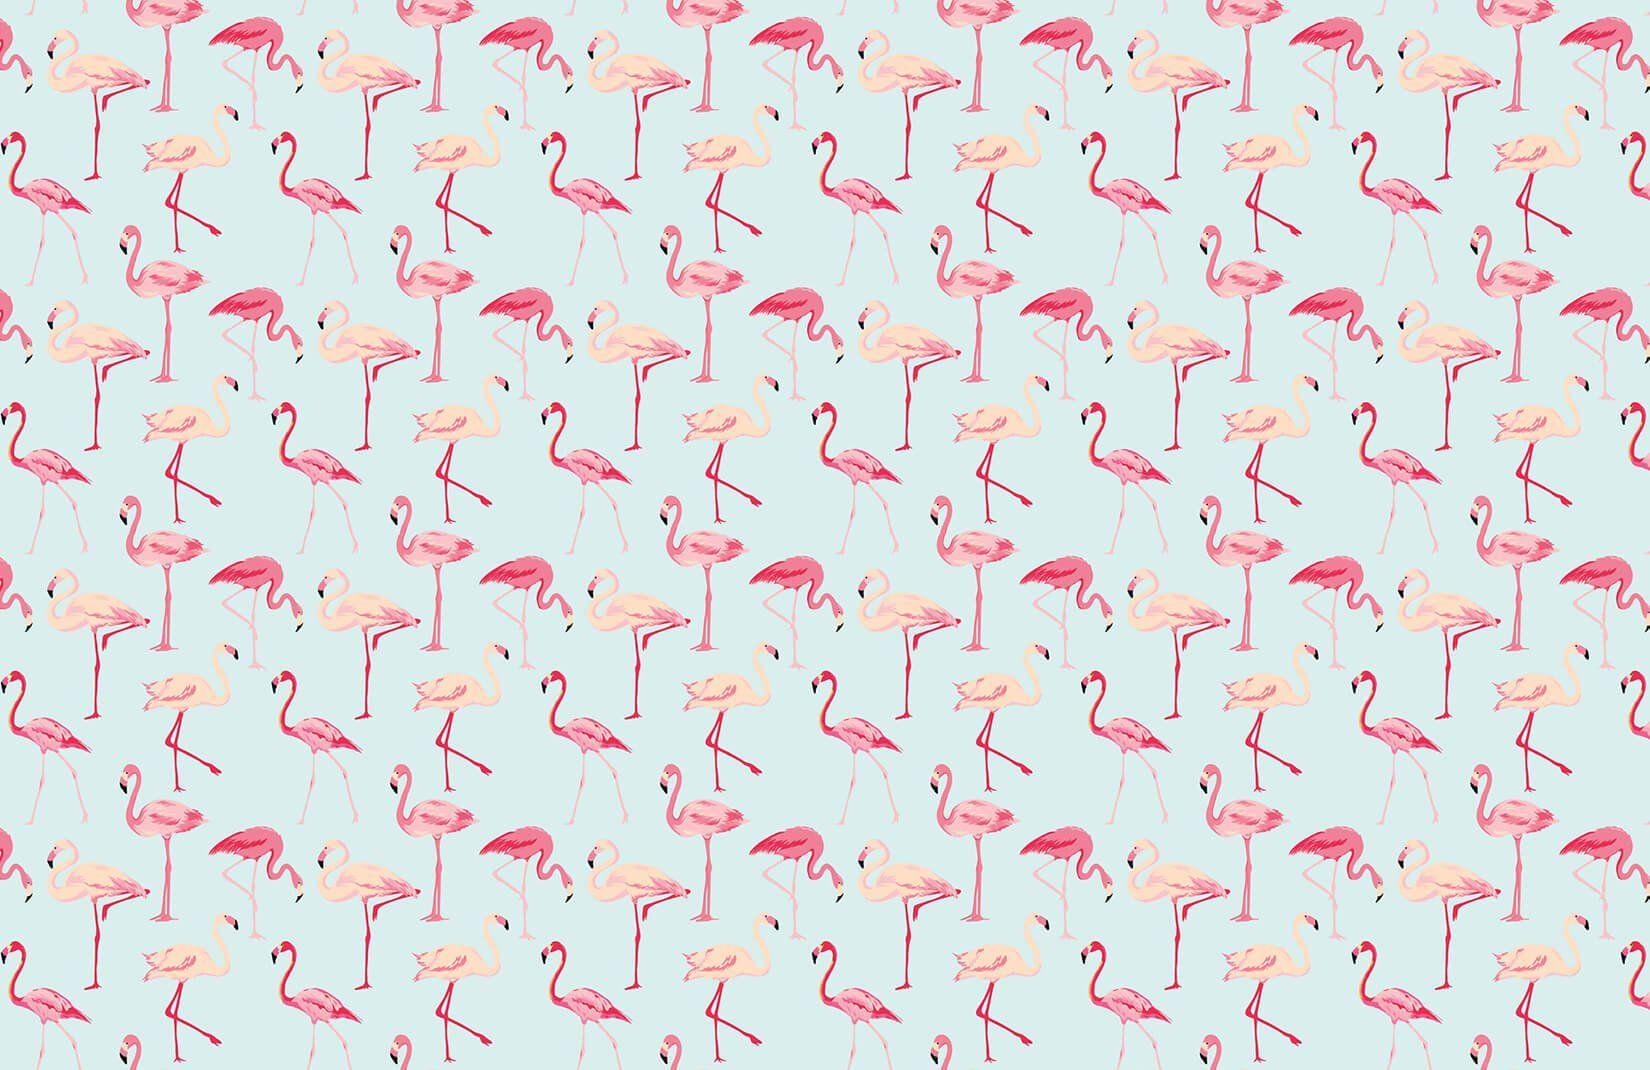 Pink Flamingo Wallpaper Mural